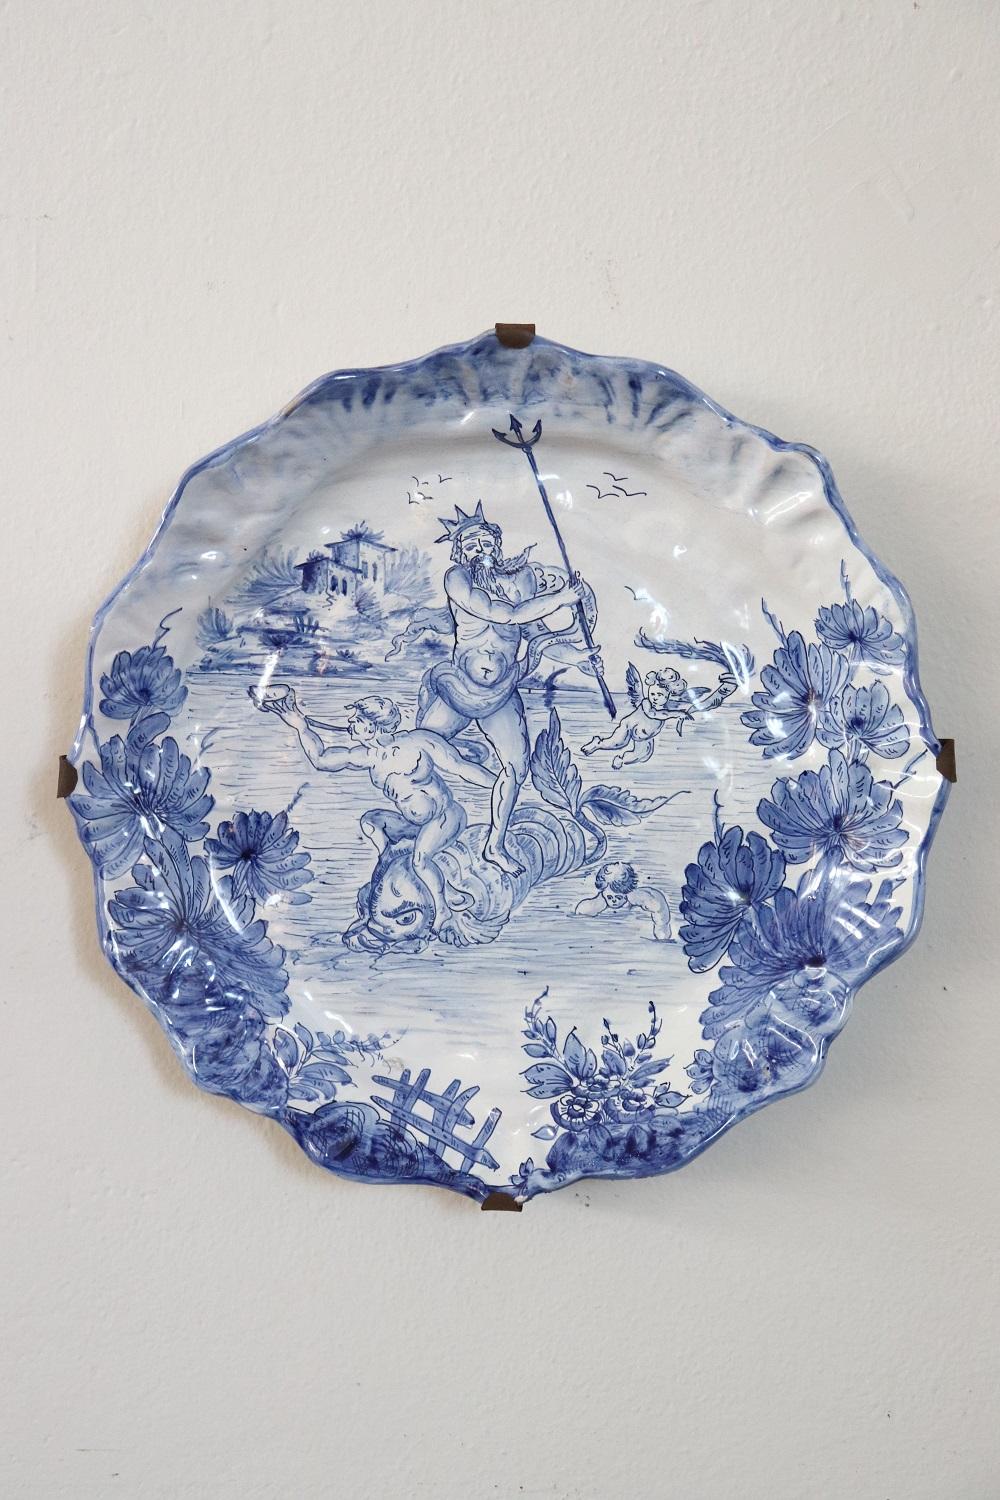 Magnifique ensemble de deux assiettes en céramique italienne importante fabriquée à Albisola, signées. Décorations néoclassiques raffinées dans des nuances de bleu. Il s'agit d'une céramique de collection.
    